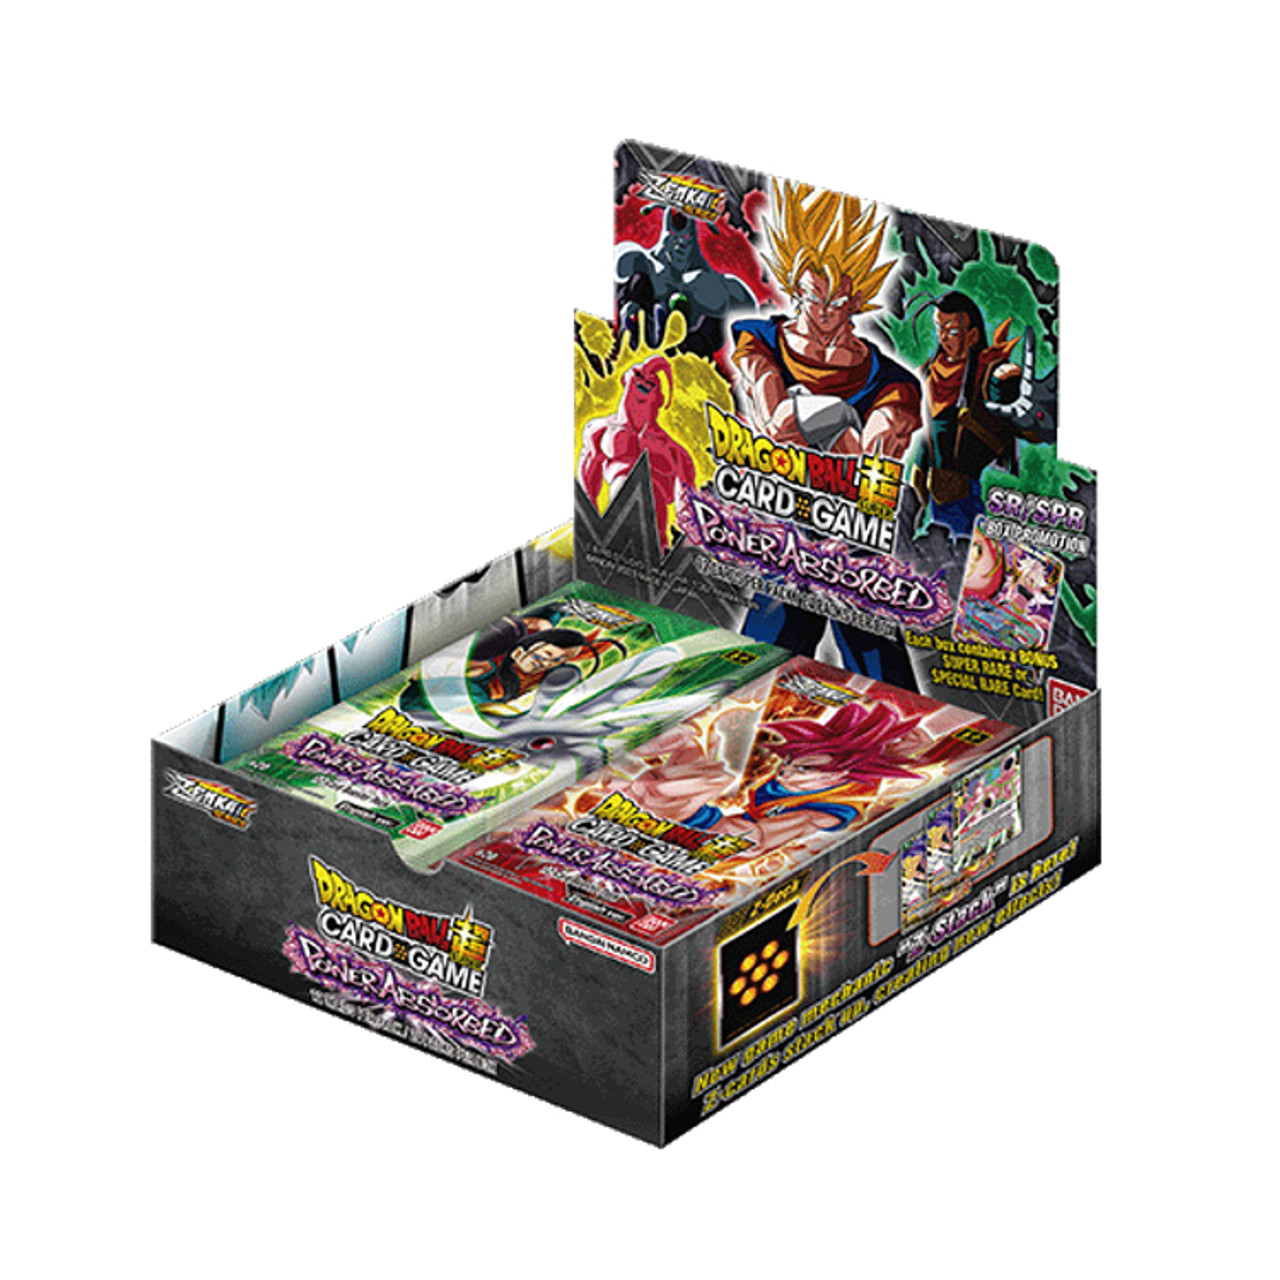 Dragonball Z Vengeance Booster Box of 24 Packs (Panini)